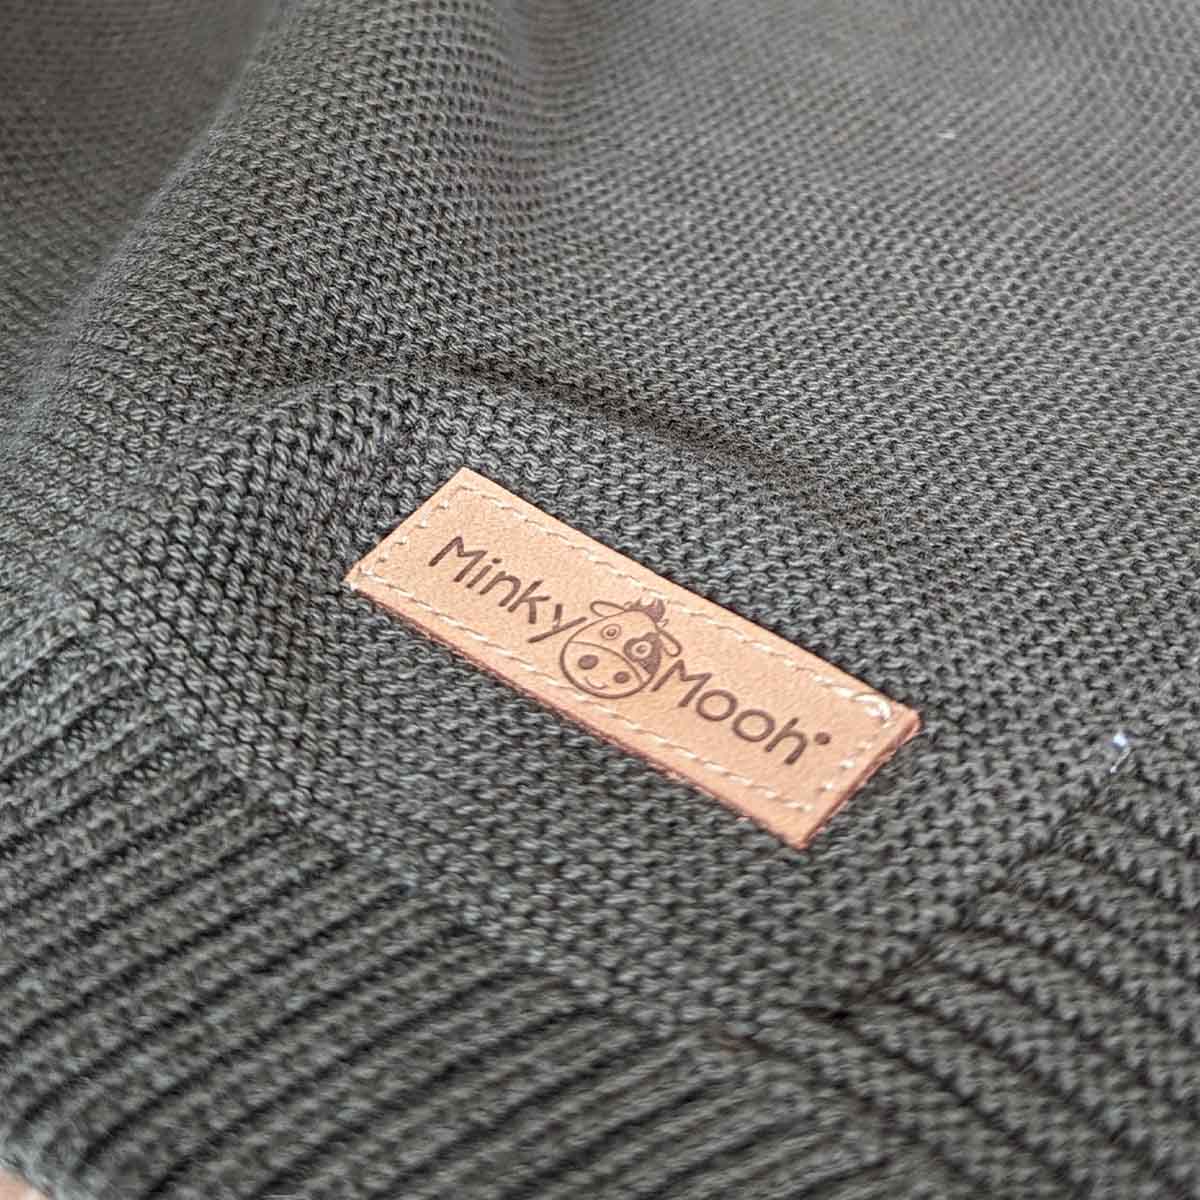 Nahaufnahme der Strick-Textur einer dunkel-grünen Bio-Baumwolldecke mit Logo-Etikett 'Minky Mooh'.